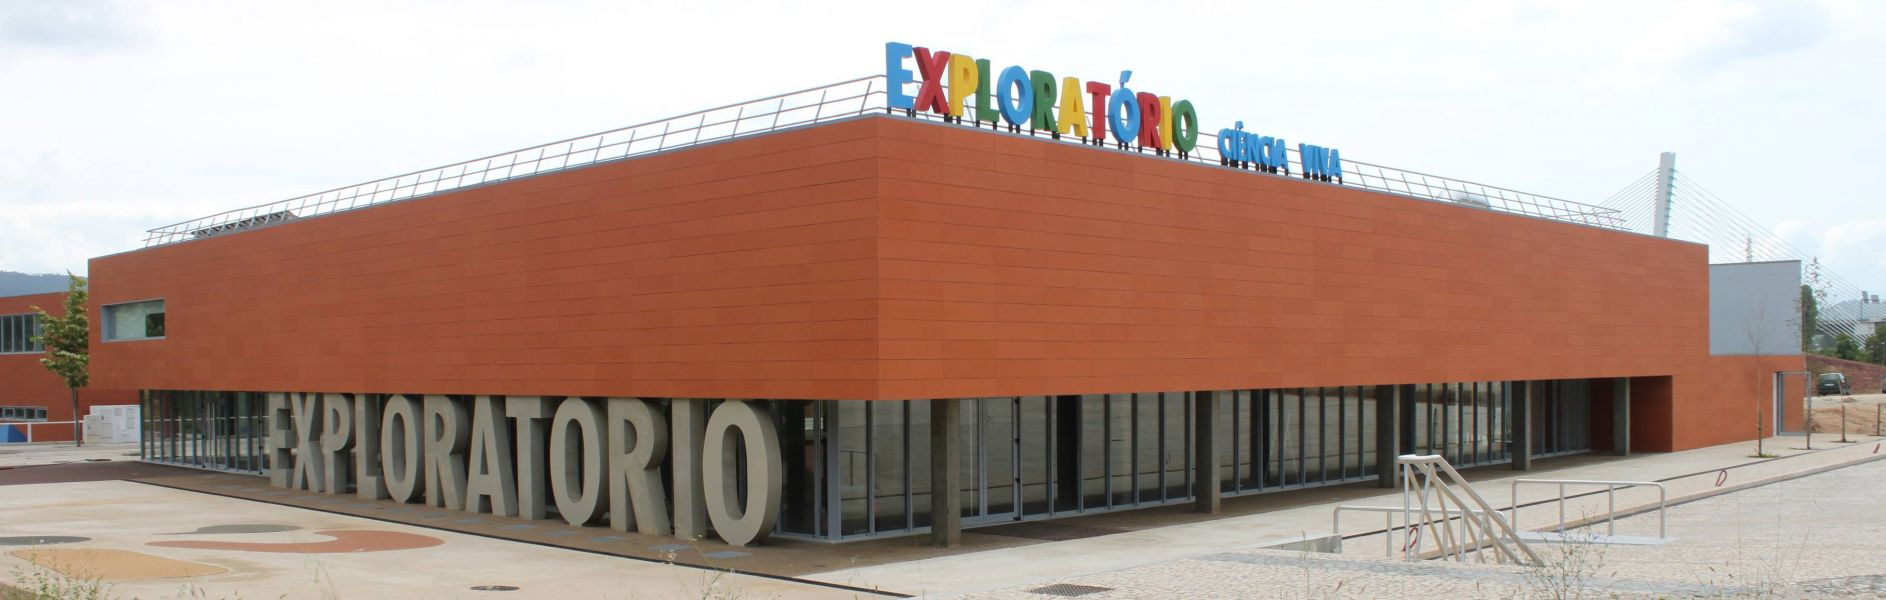 Exploratório - Centro Ciência Viva de Coimbra